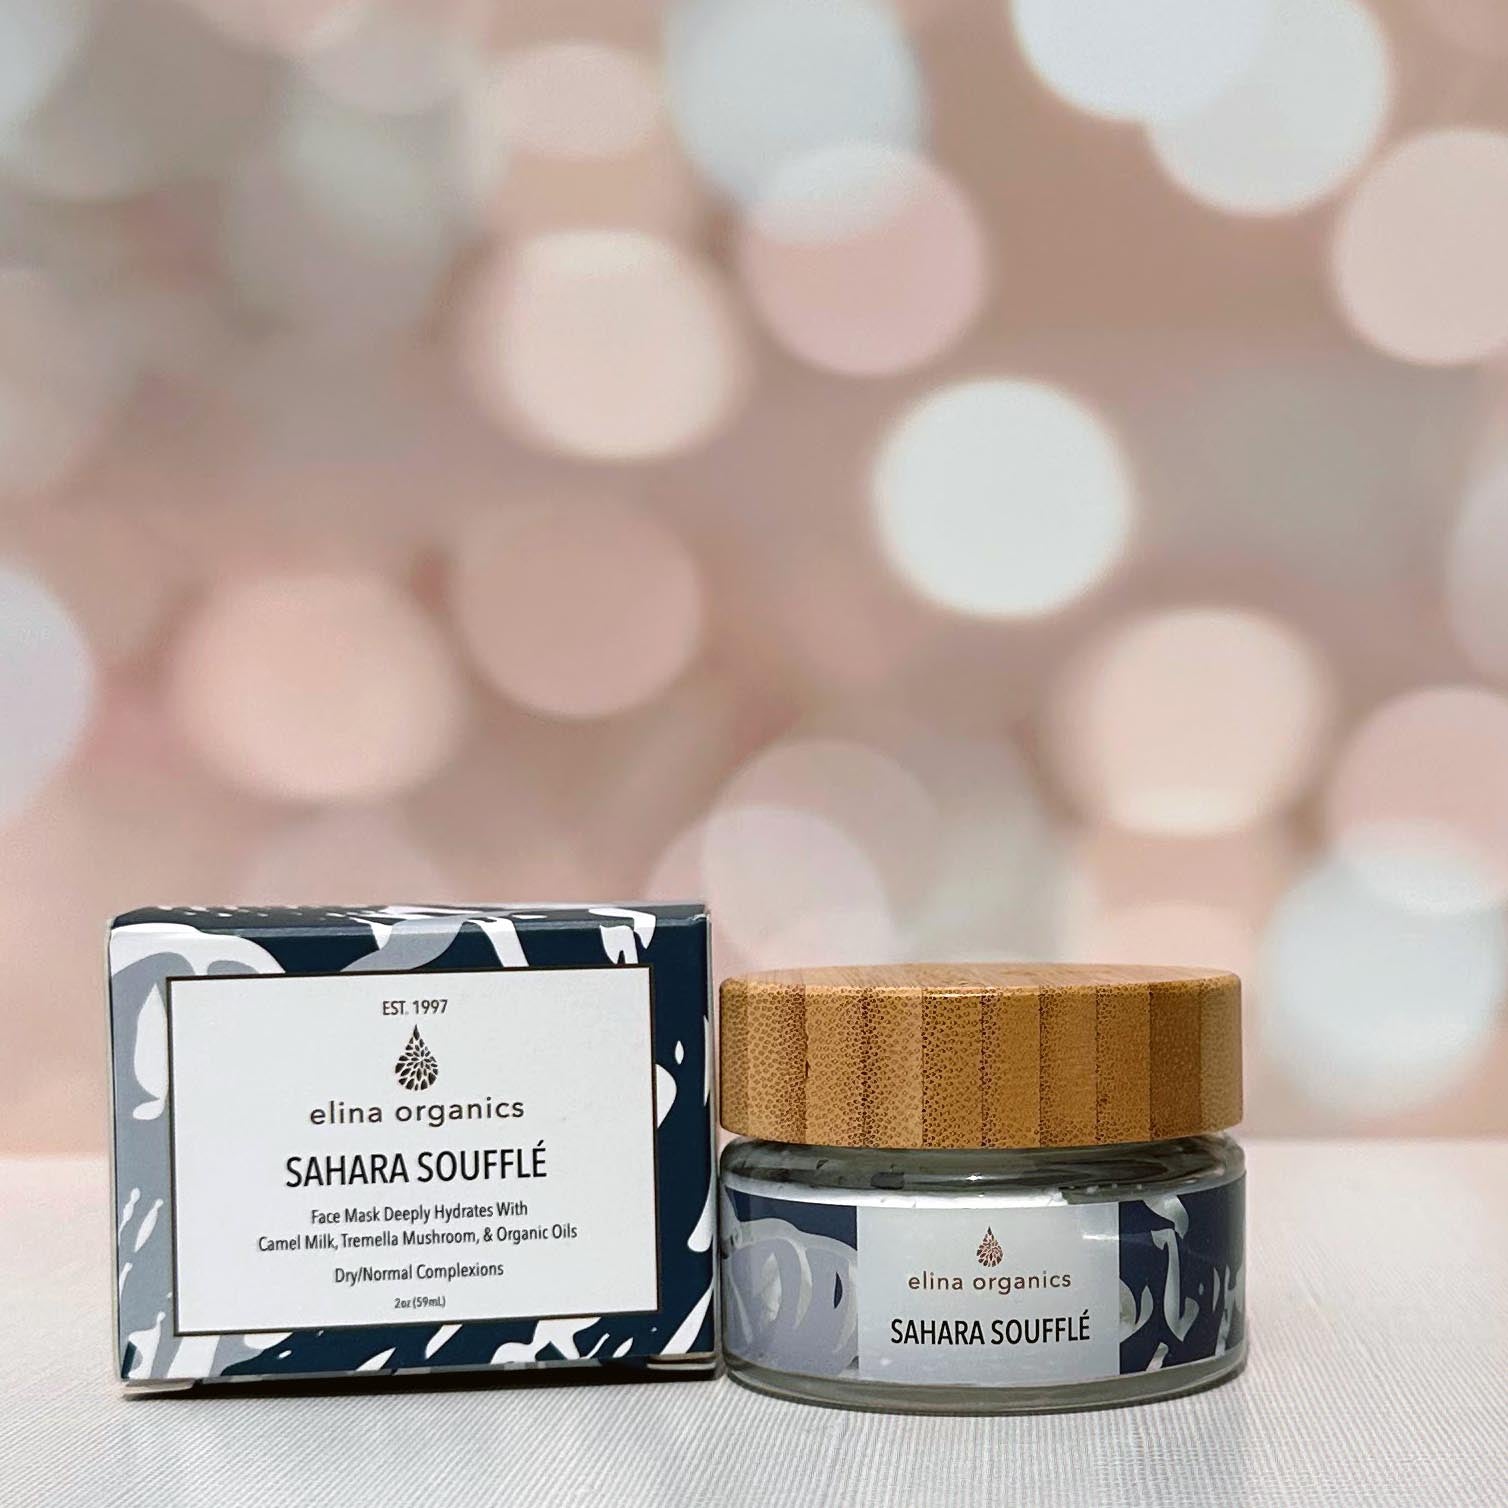 Elina Organics' Sahara Souffle' with Box